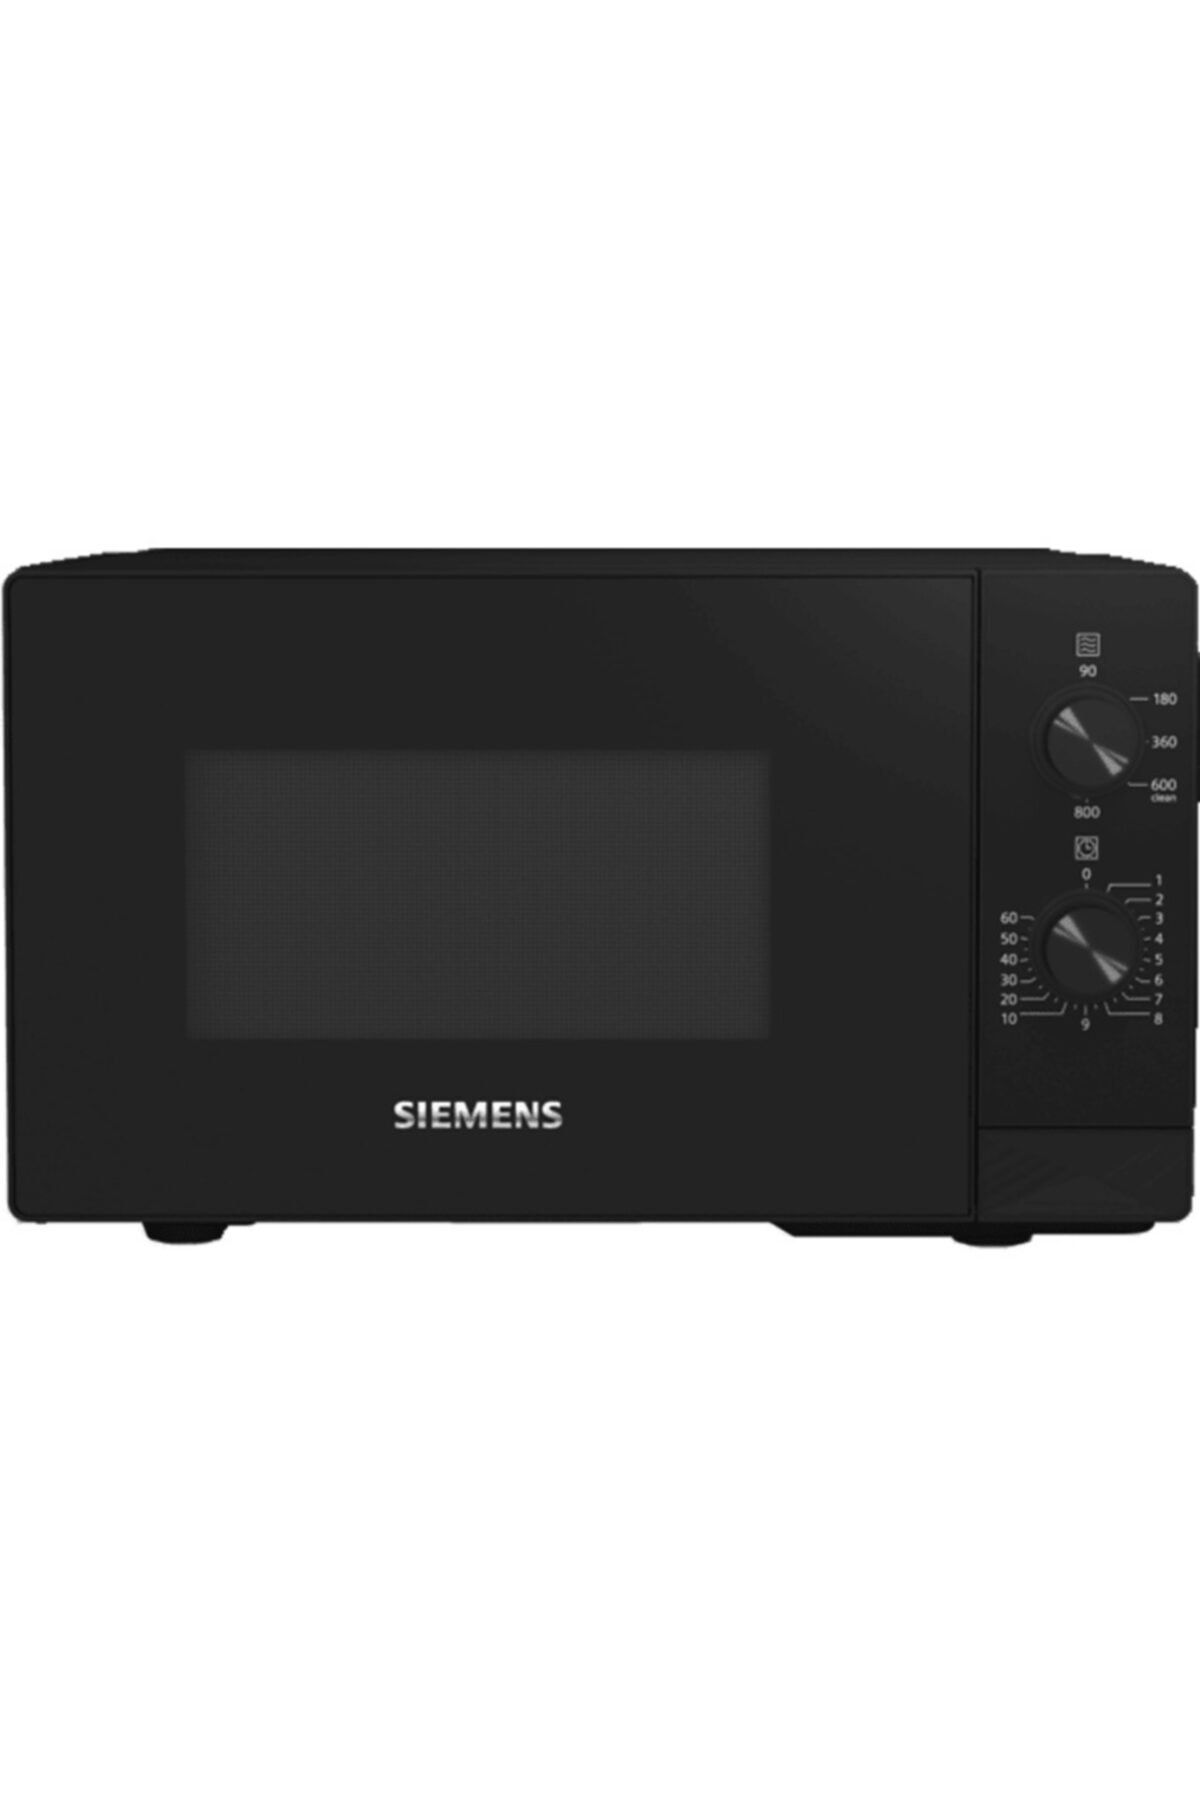 Siemens Ff020lmb2 20 Lt Mikrodalga Fırın Siyah